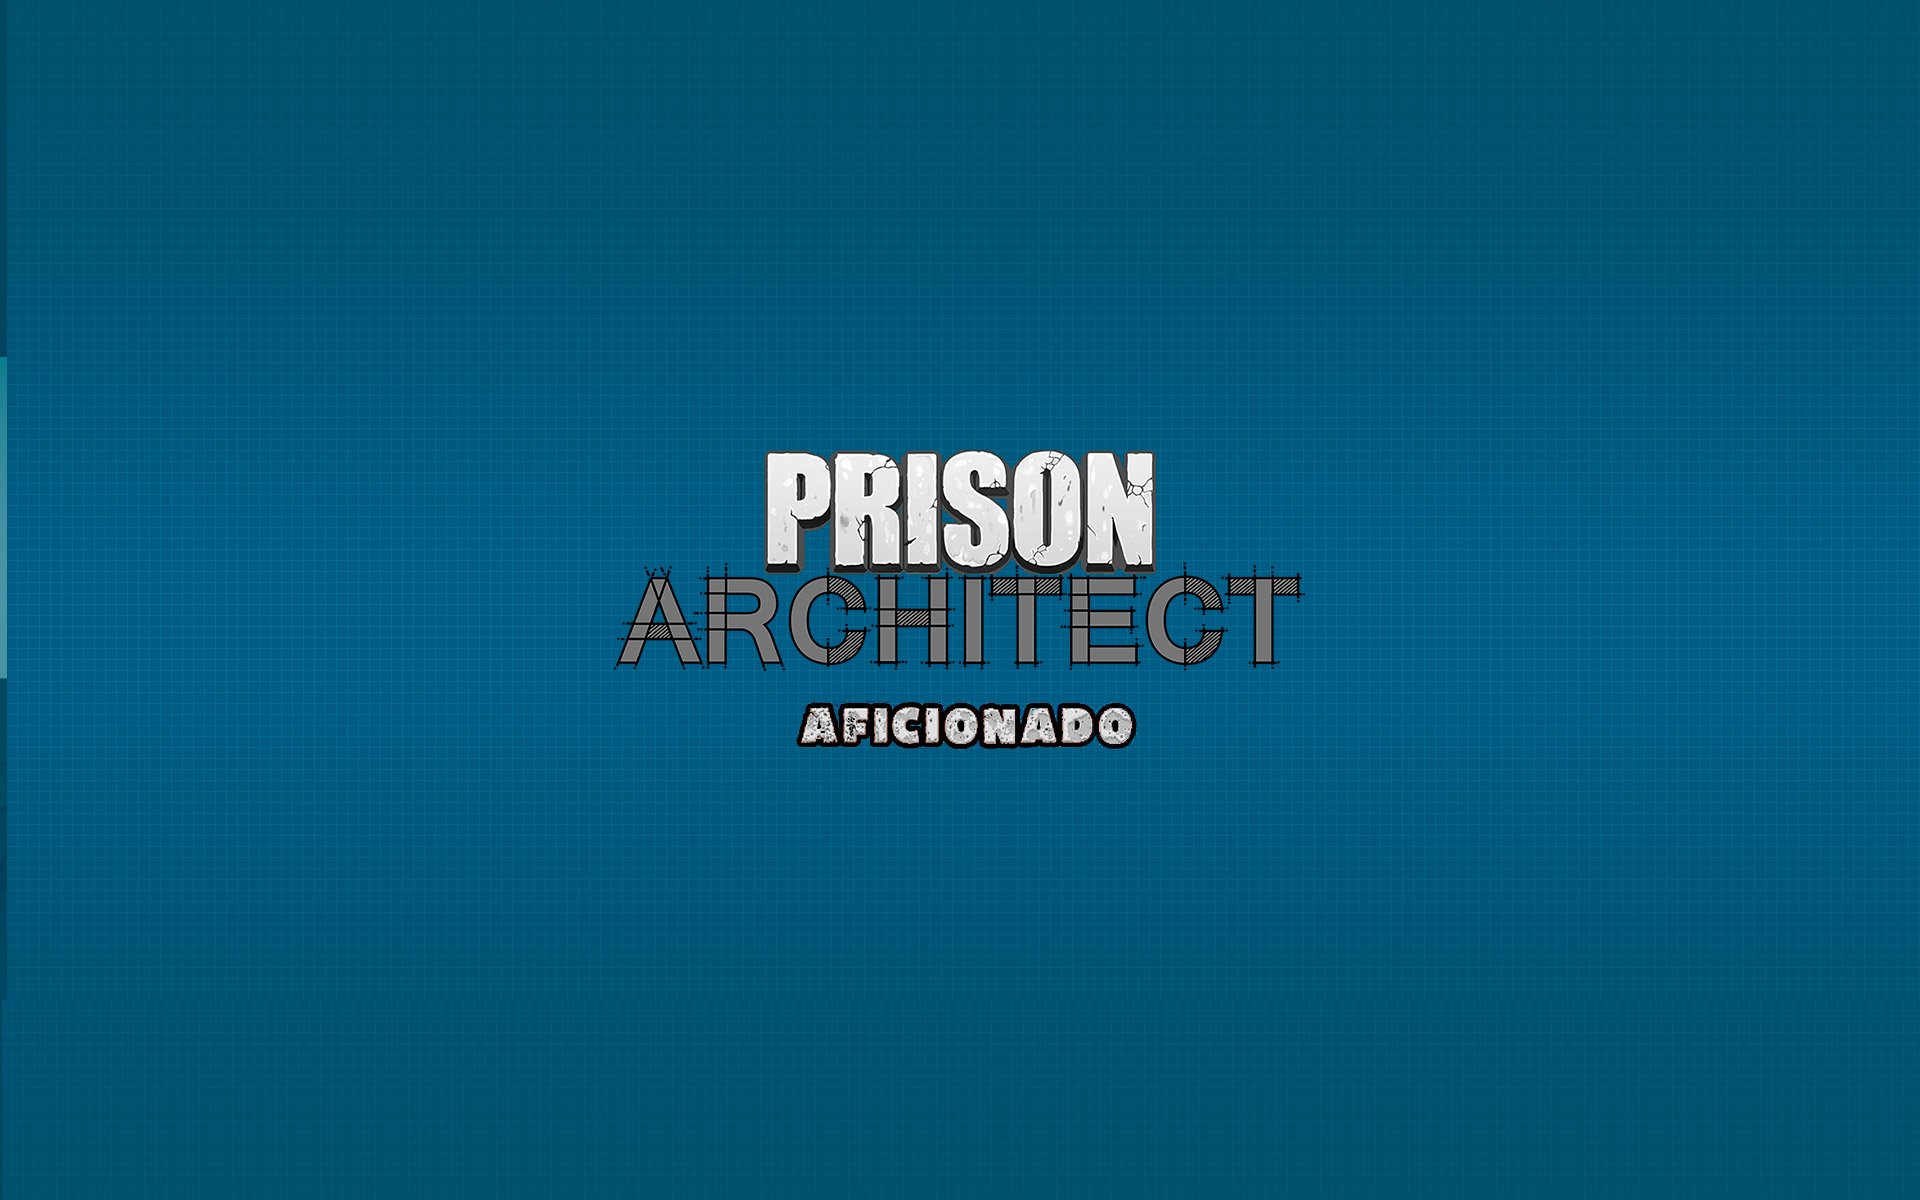 Prison Architect - Aficionado por R$ 65.99